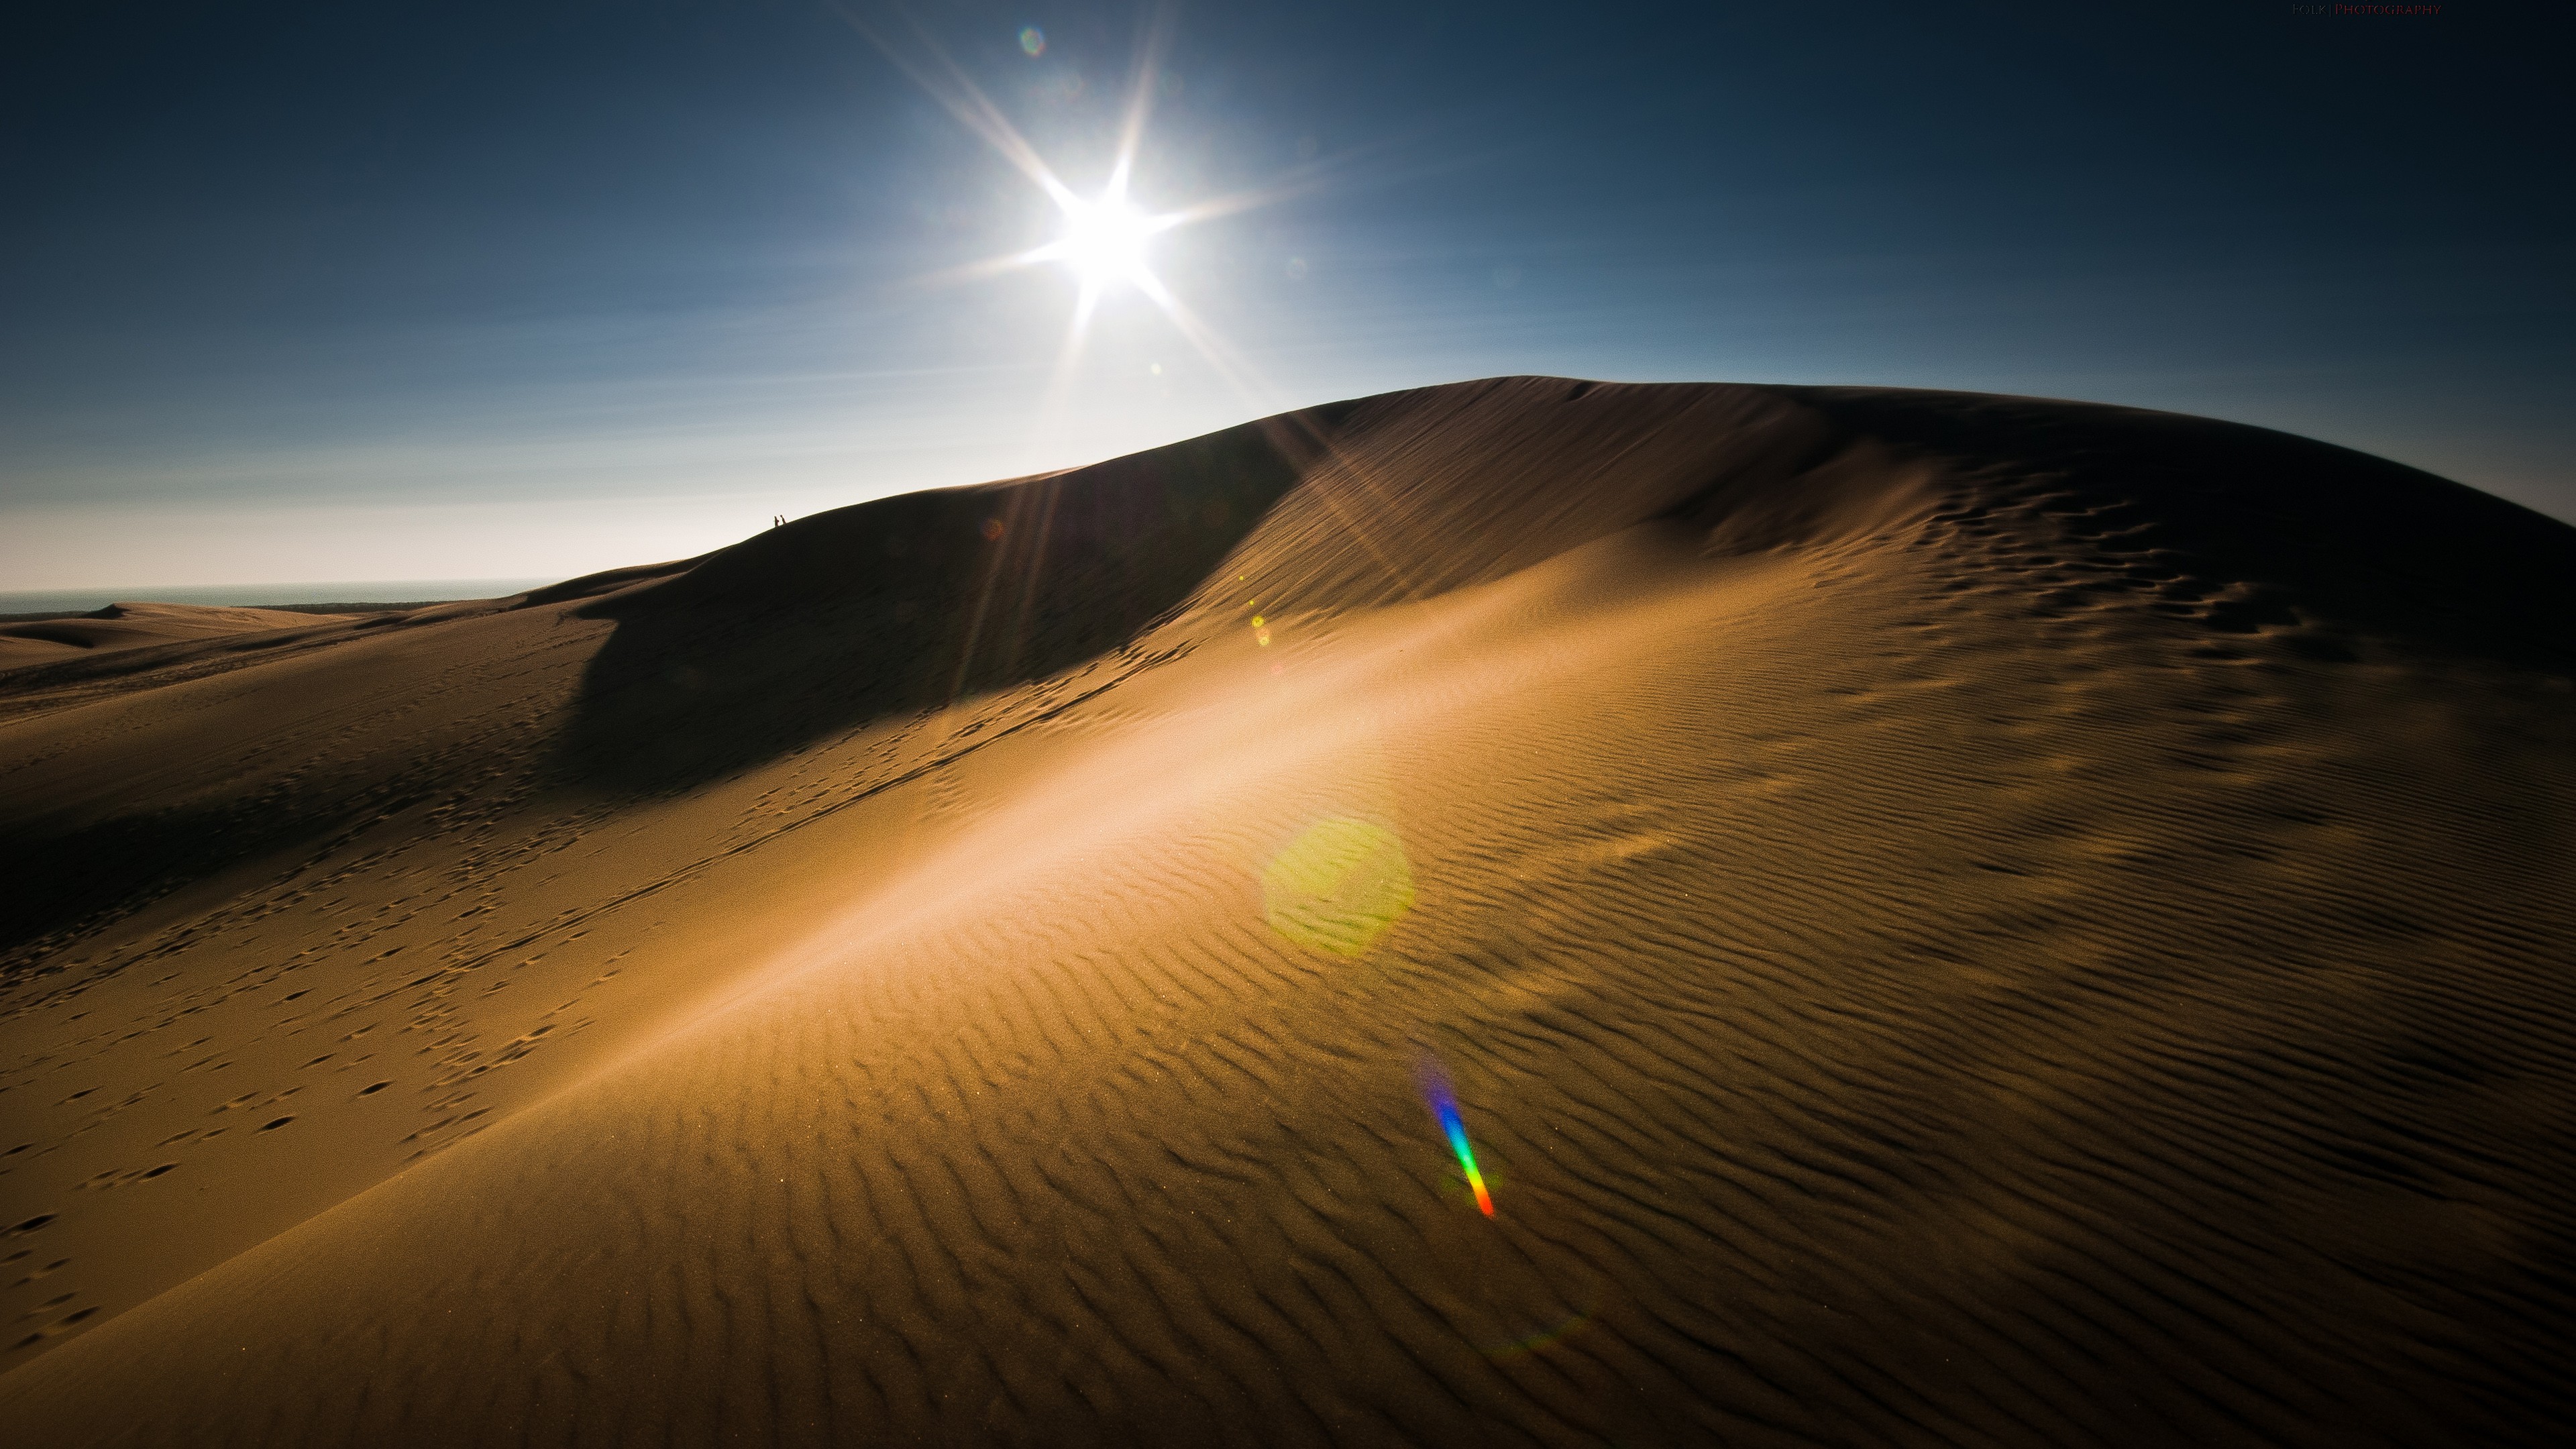 fonds d'écran uhd pour android,le sable,désert,ciel,dune,lumière